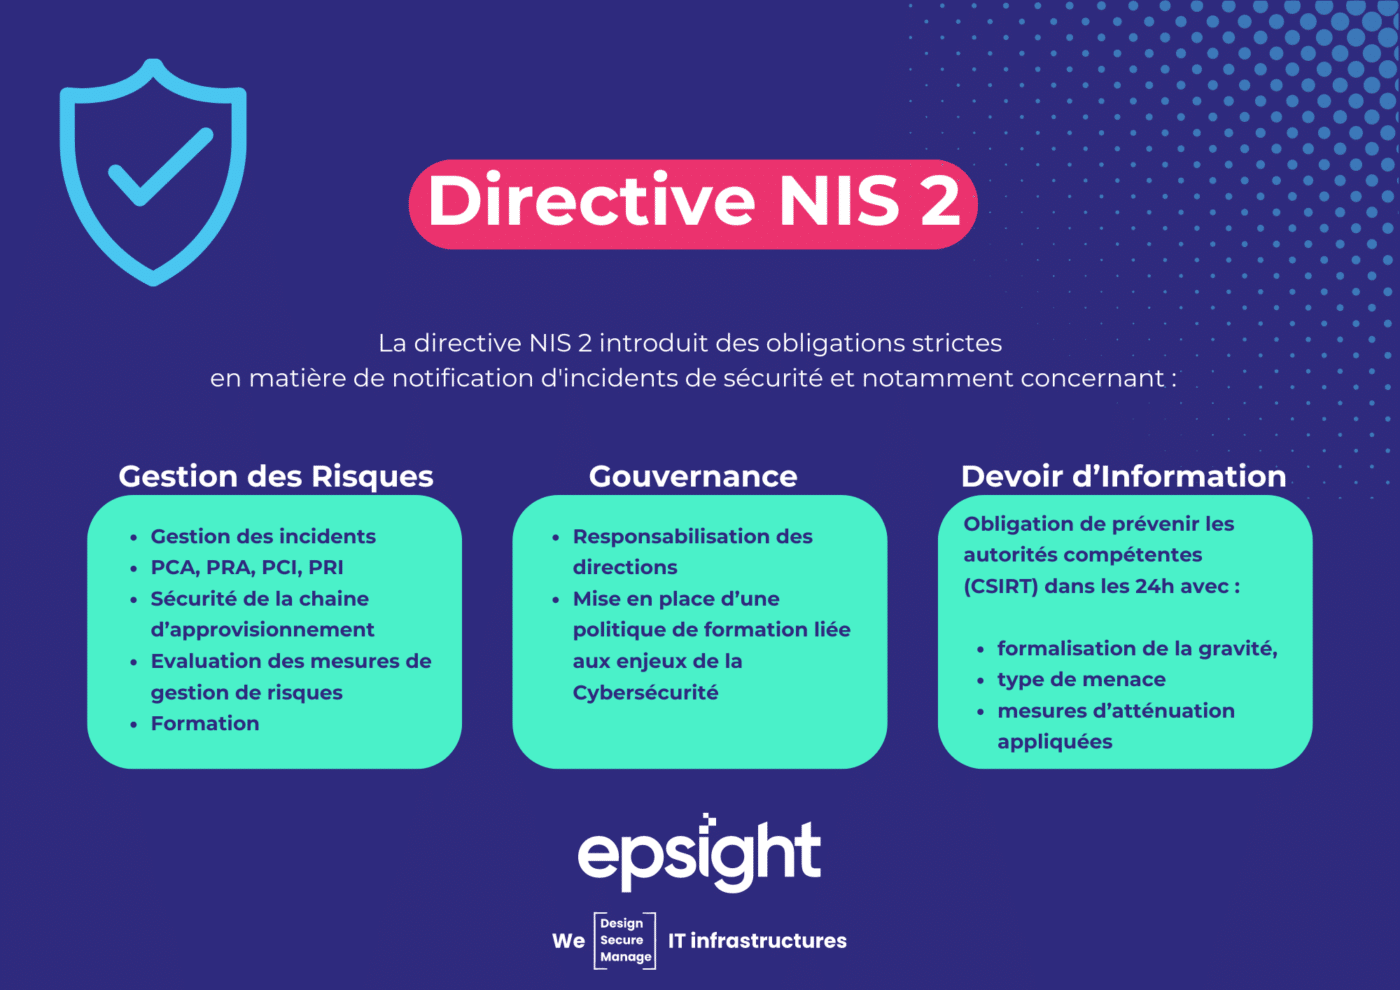 résumé des obligations strictes de la directive NIS 2